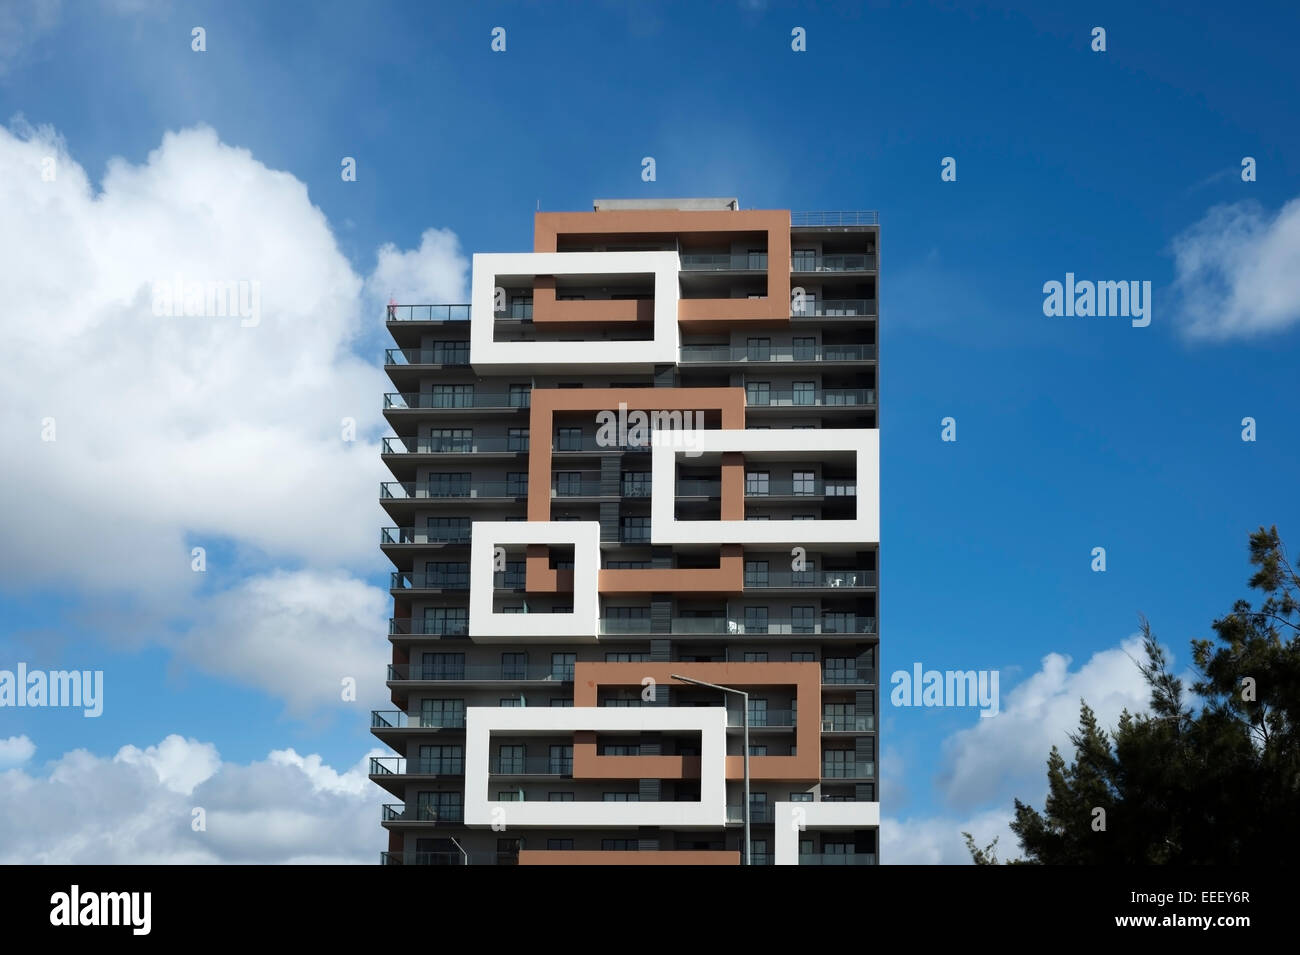 El moderno diseño del bloque de apartamentos Torre Rocha en Praia da rocha, Algarve, Portugal Foto de stock